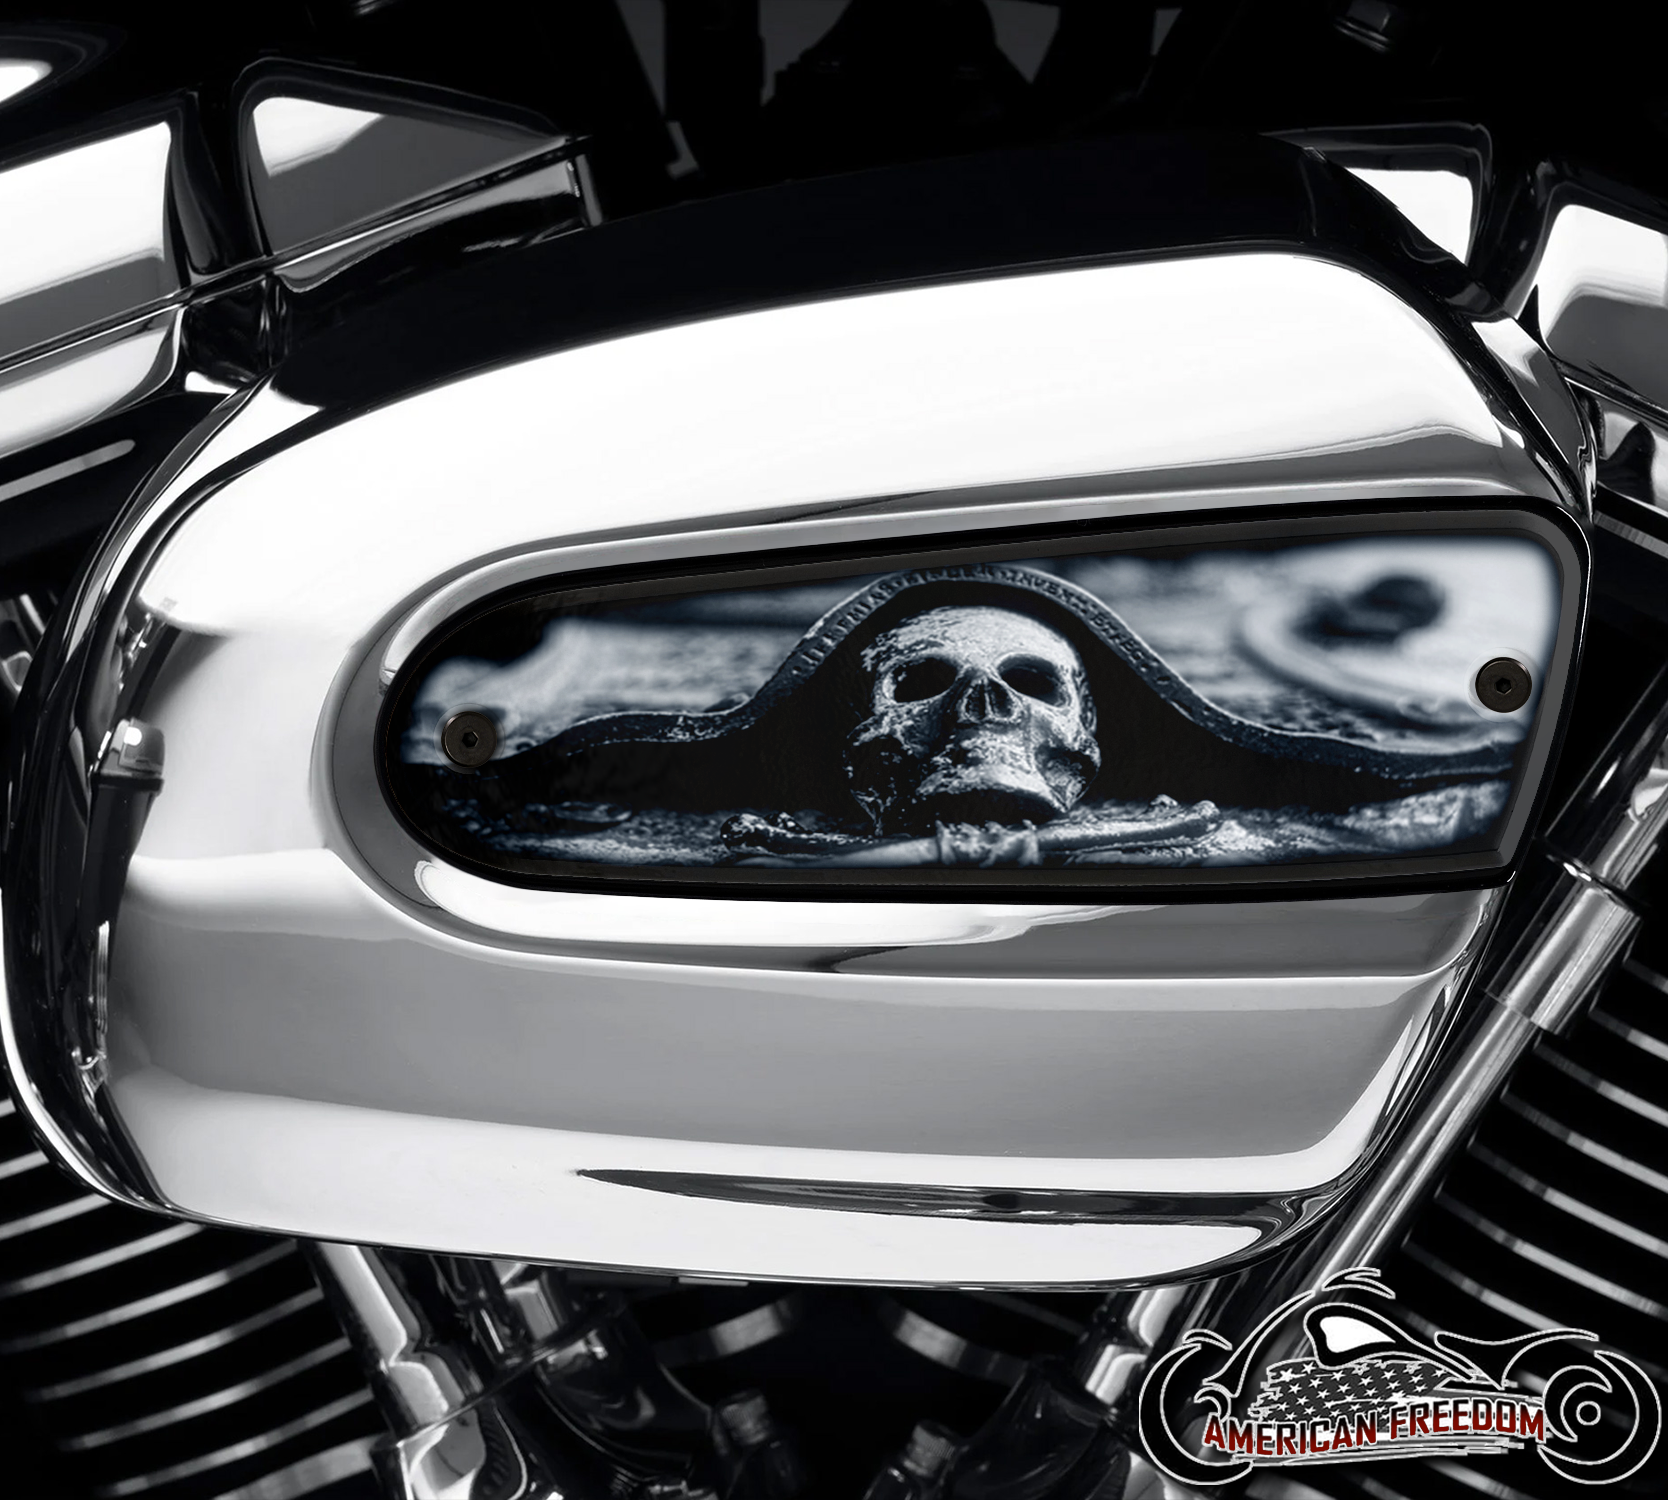 Harley Davidson Wedge Air Cleaner Insert - Tiny Skull